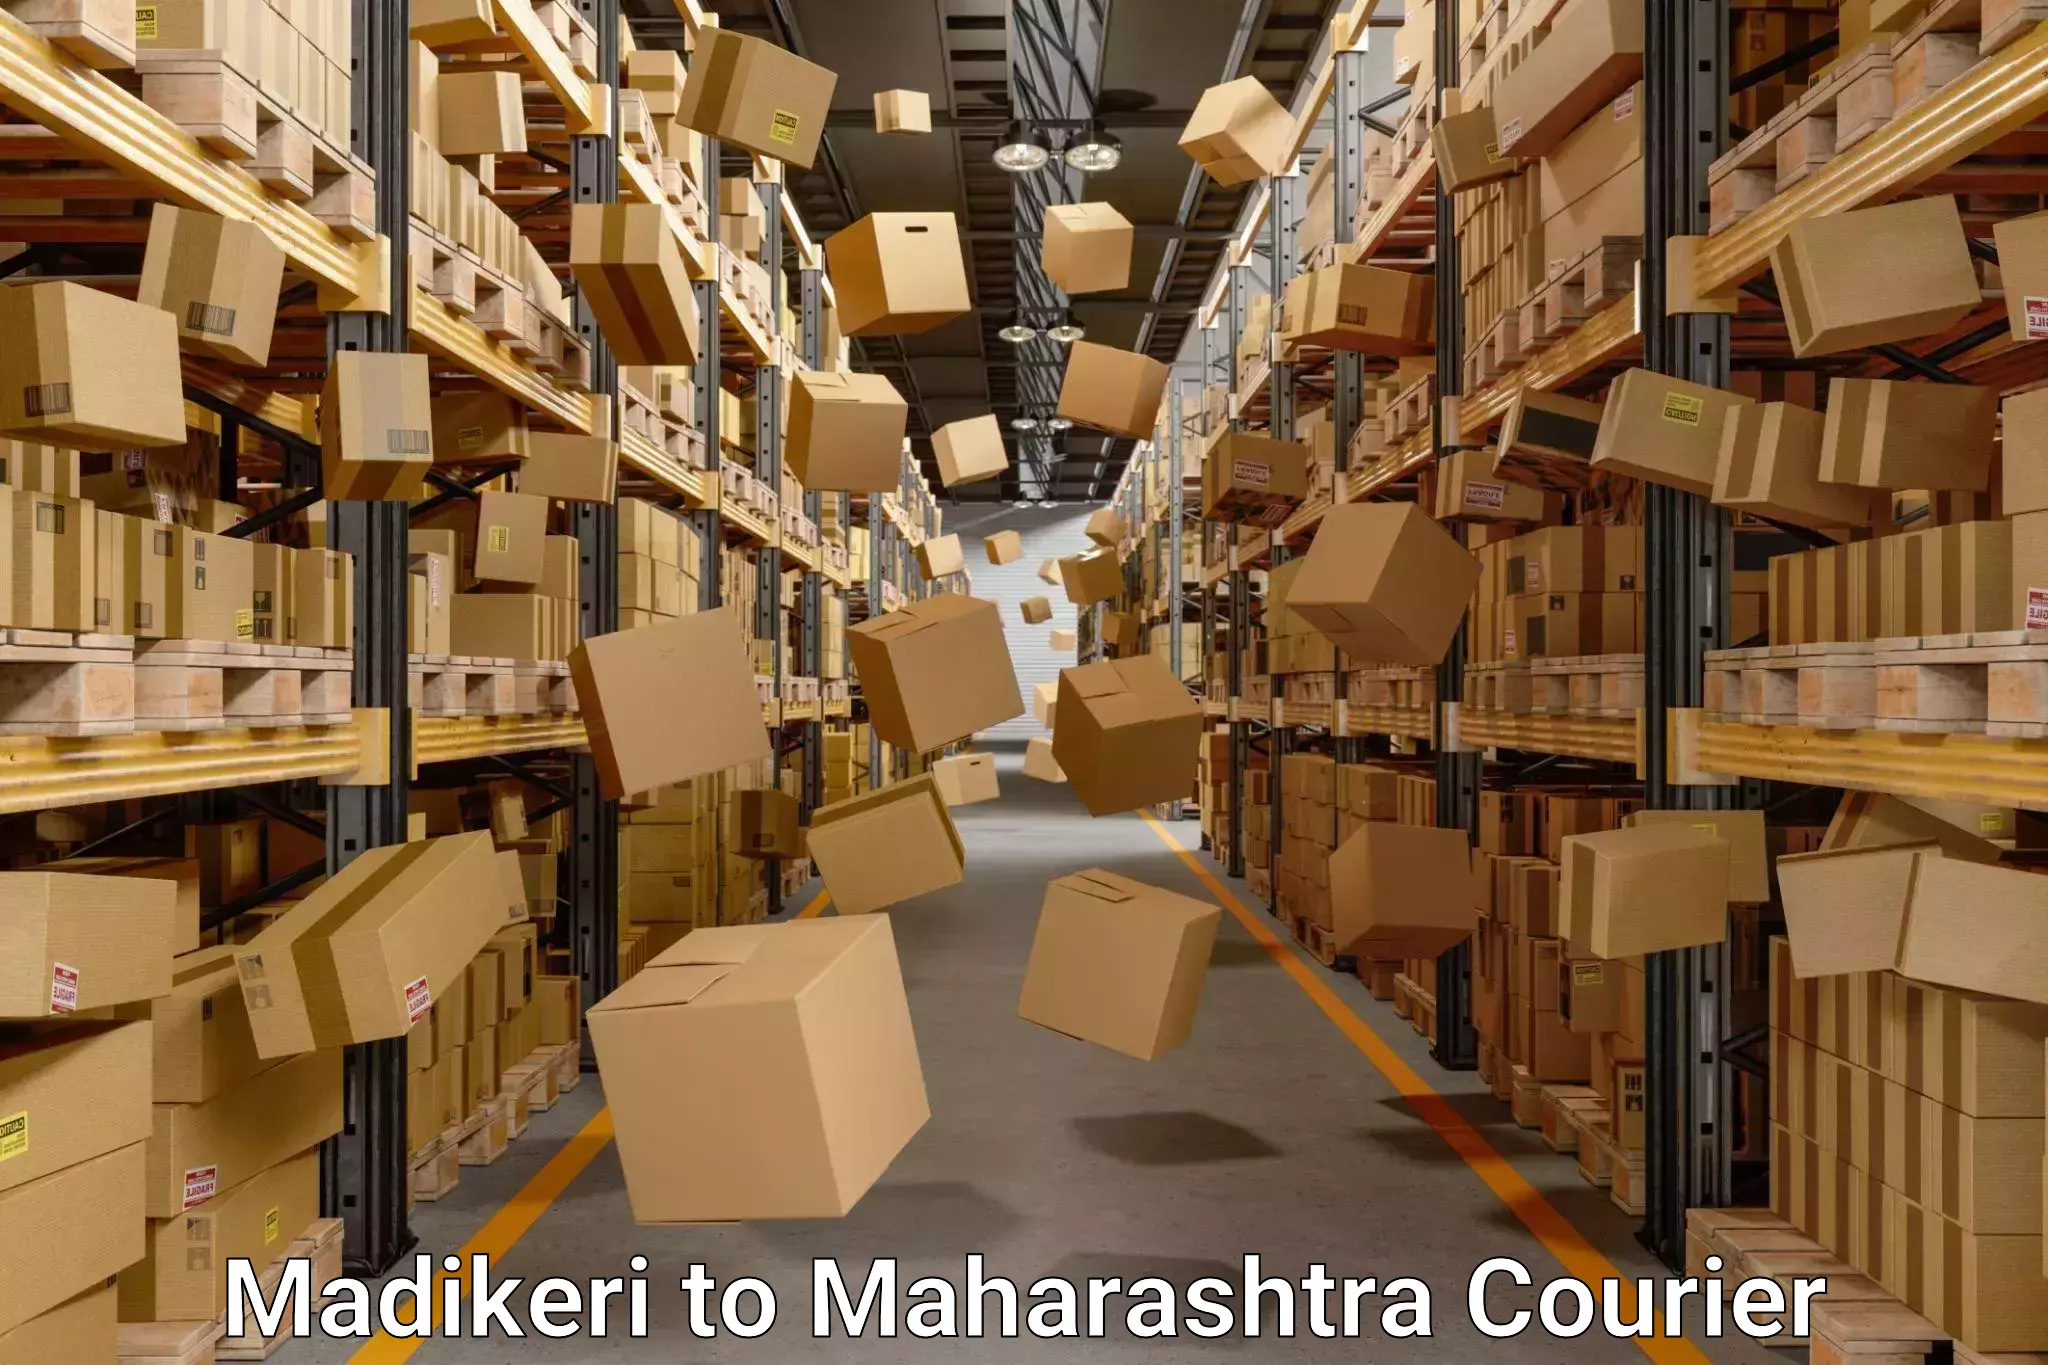 Budget-friendly movers Madikeri to Maharashtra